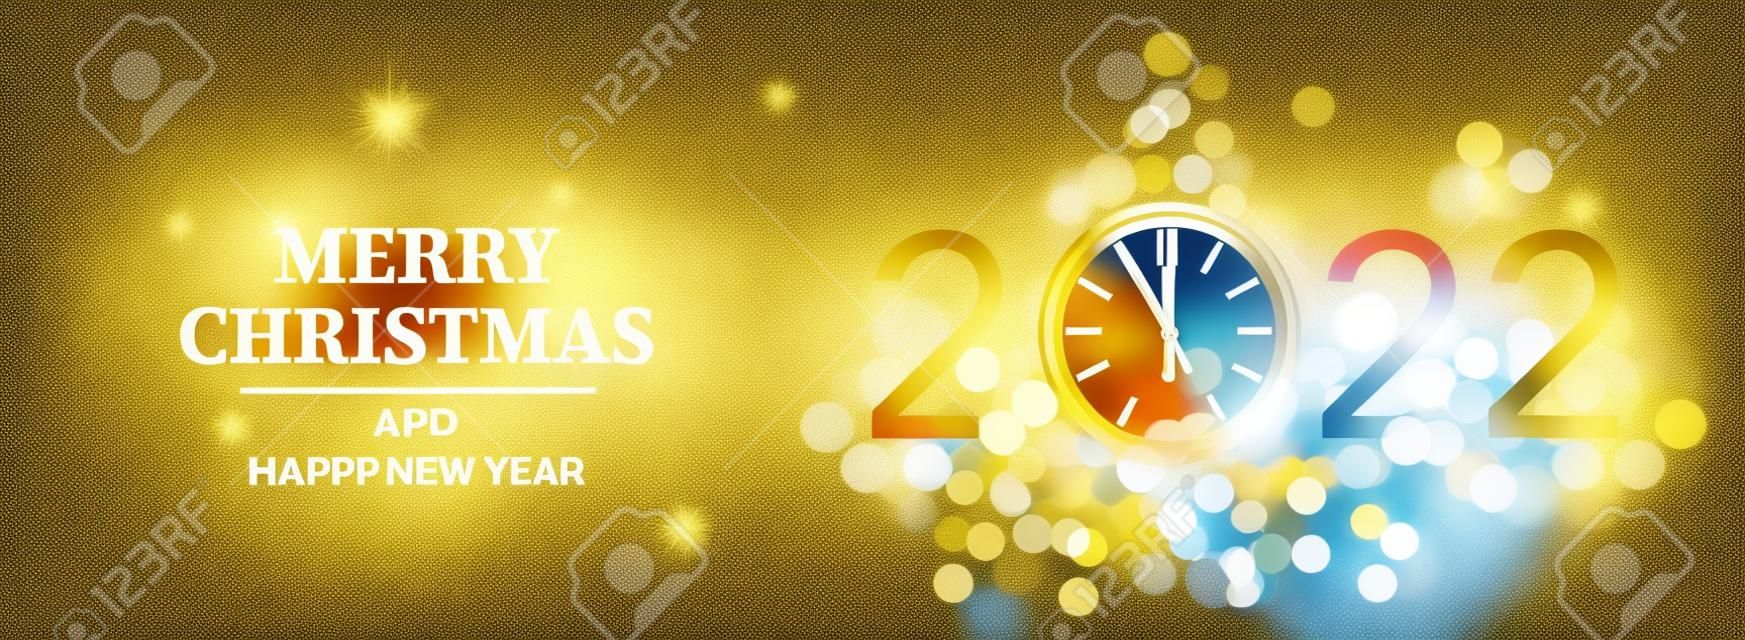 메리 크리스마스와 새해 복 많이 받으세요 2022 - 금시계와 크리스마스 트리 스파클 블러 보케 효과, 벡터 일러스트레이션으로 빛나는 배경